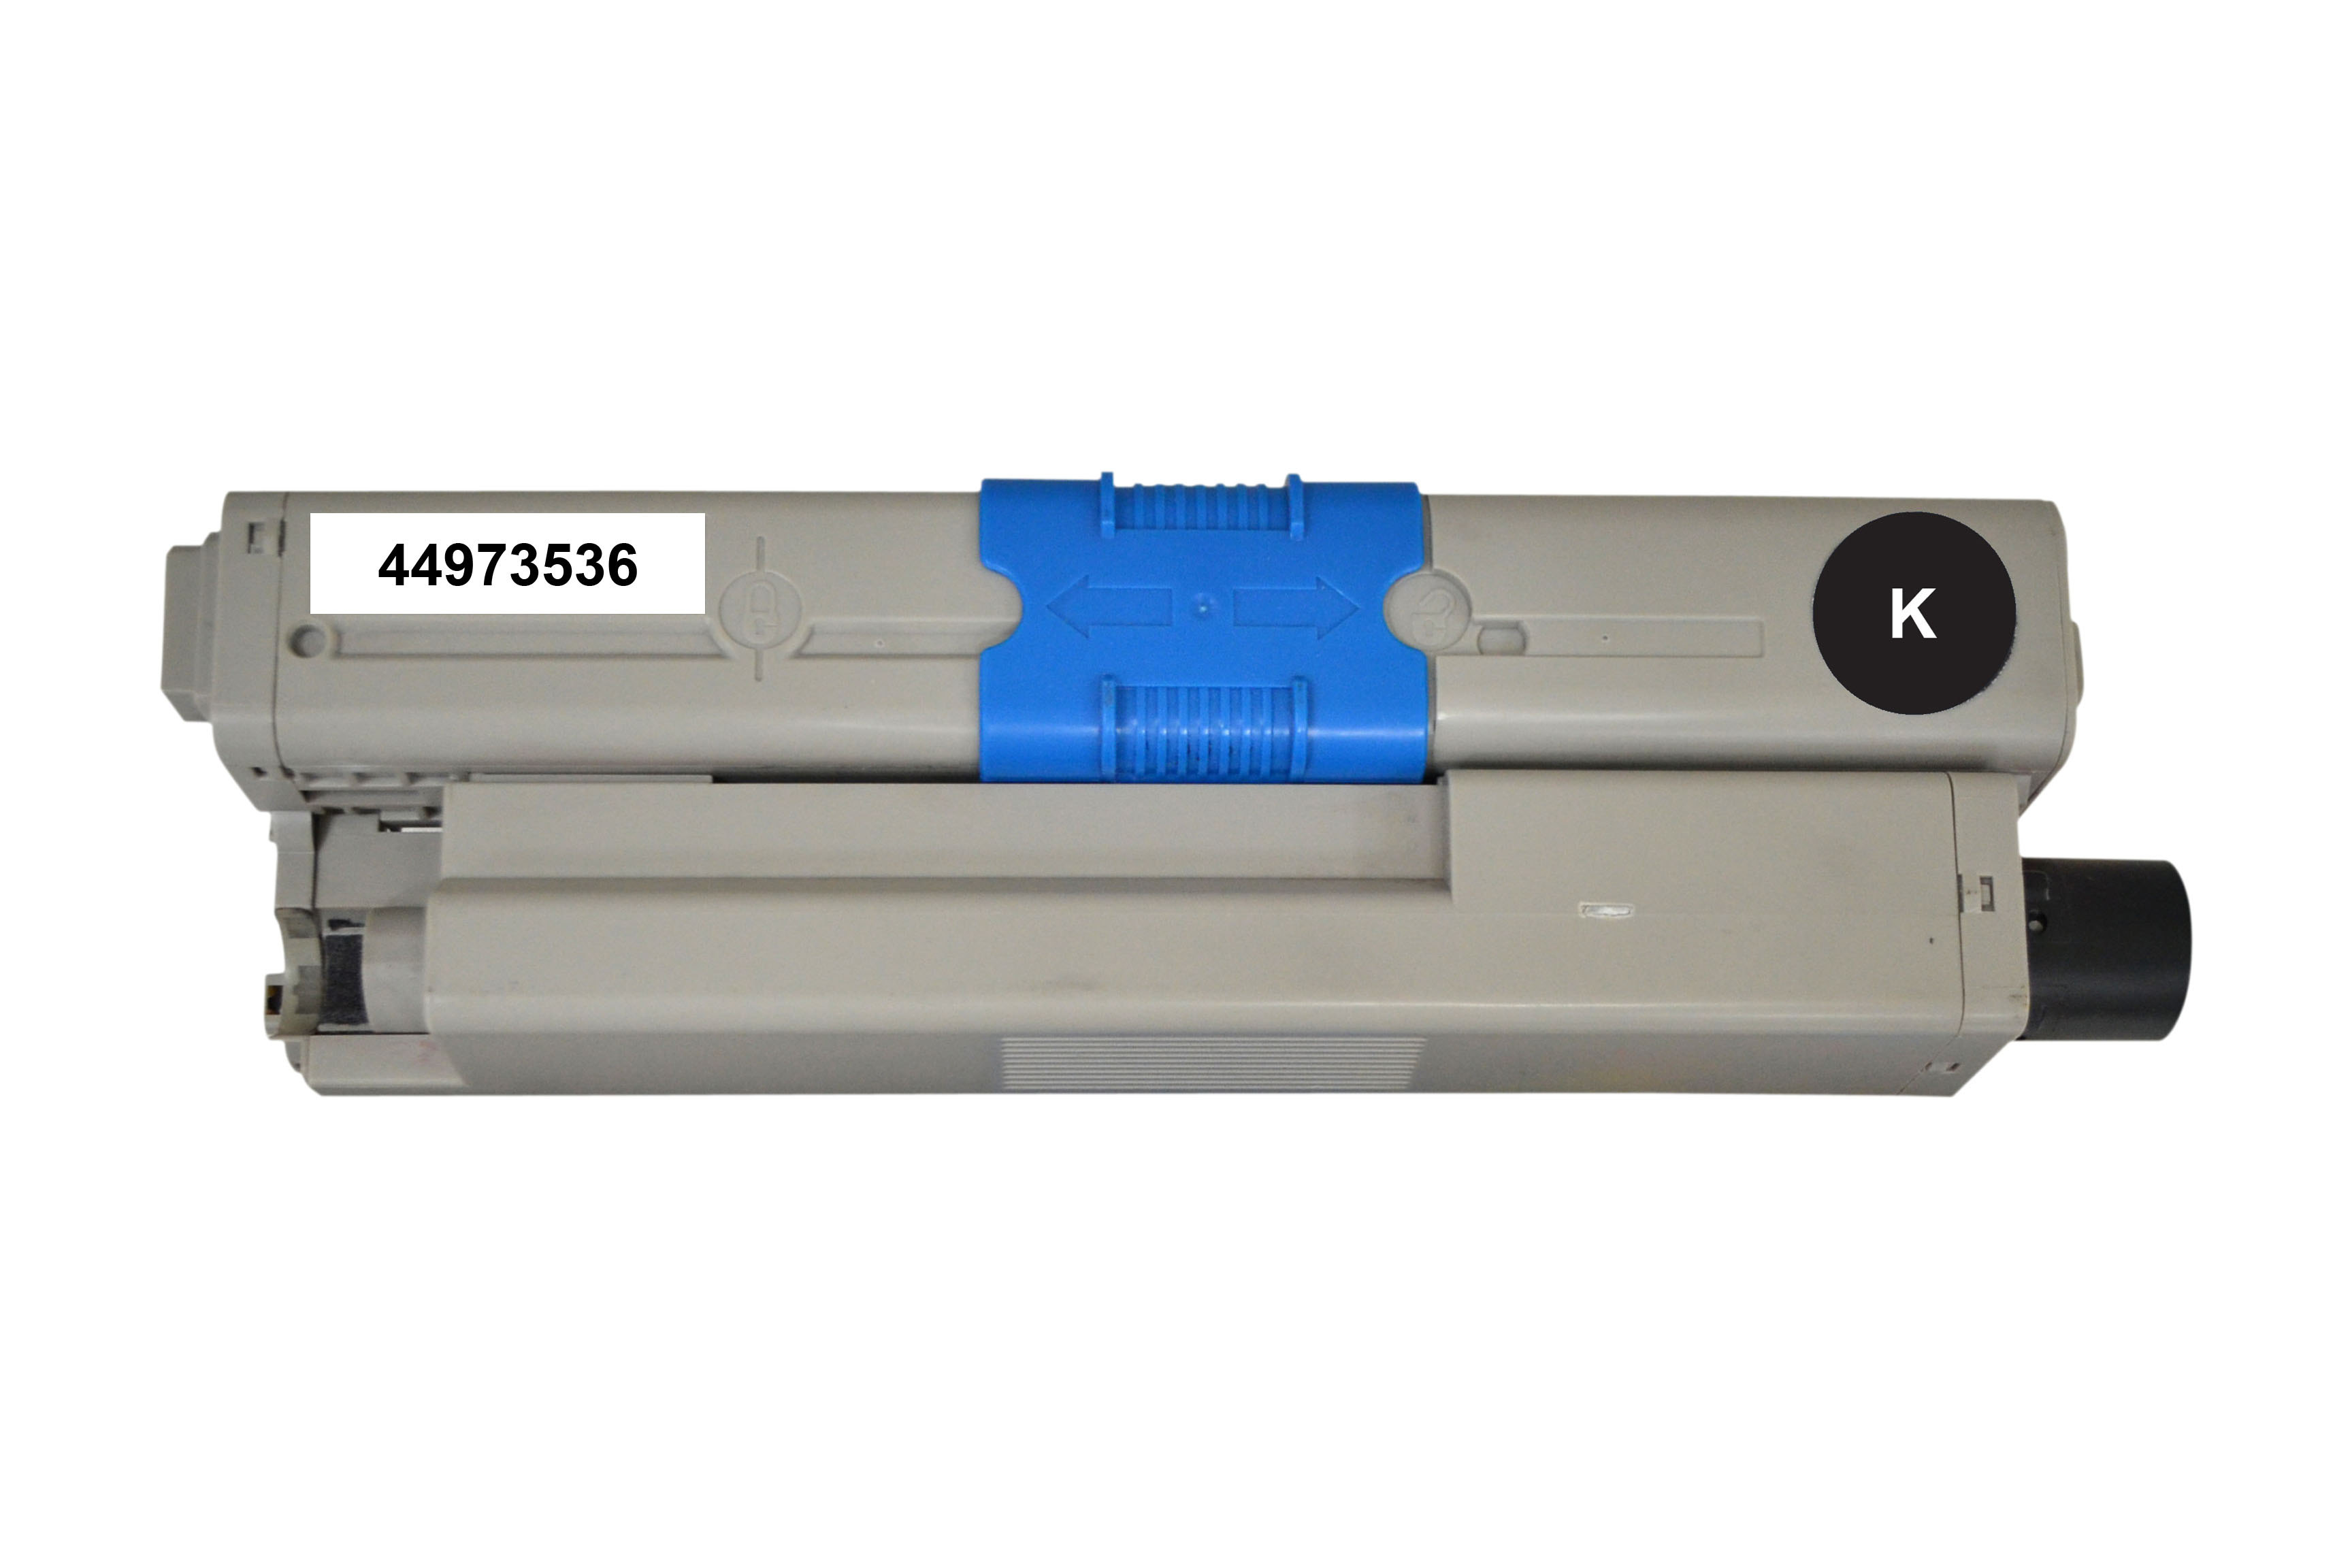 NewbuiltO301A, Newbuilt Toner kompatibel zu OKI C301 black (2.200 S.)